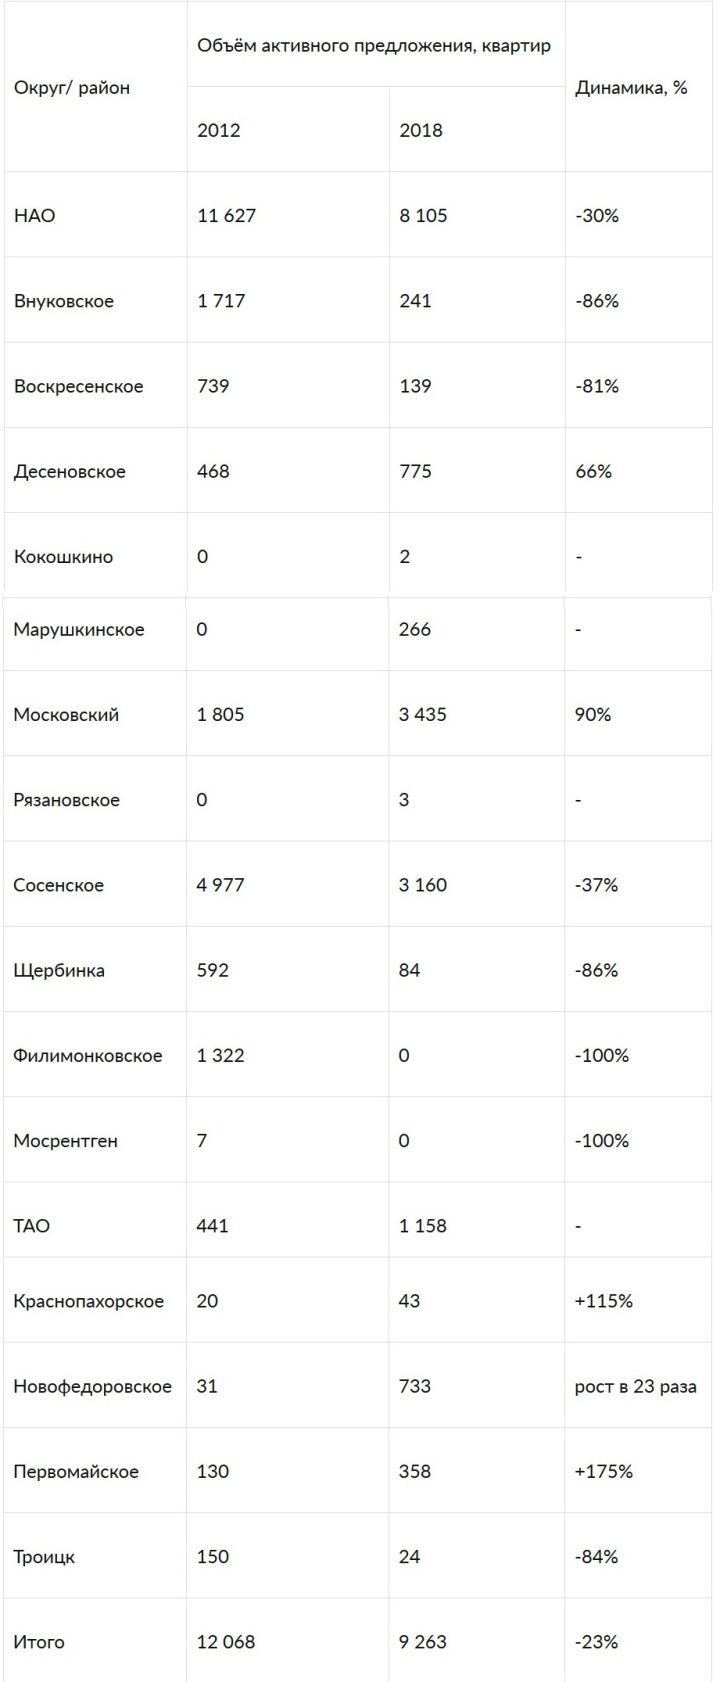 Динамика активного предложения на первичном рынке «новой Москвы» по округам/ районам, 2012-2018 годы